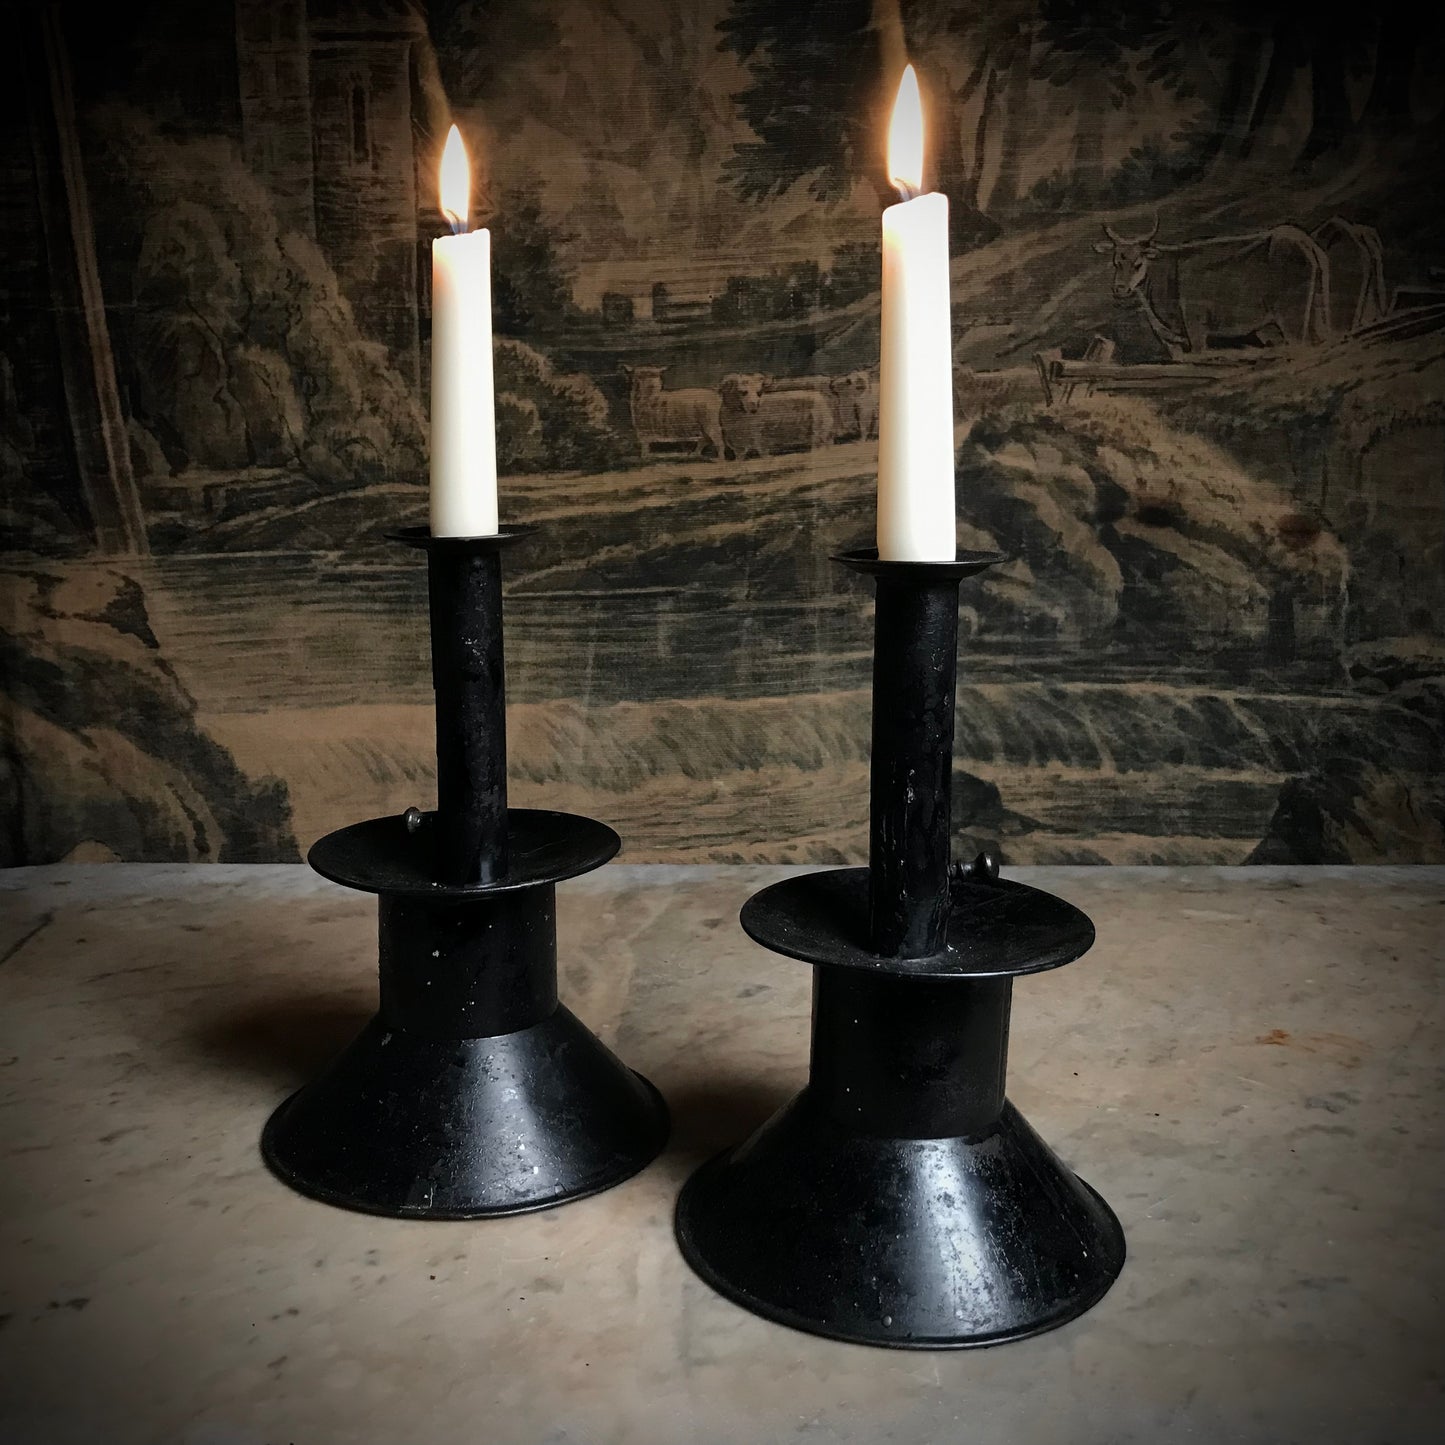 Rare Pair of Toleware Candlesticks c.1820